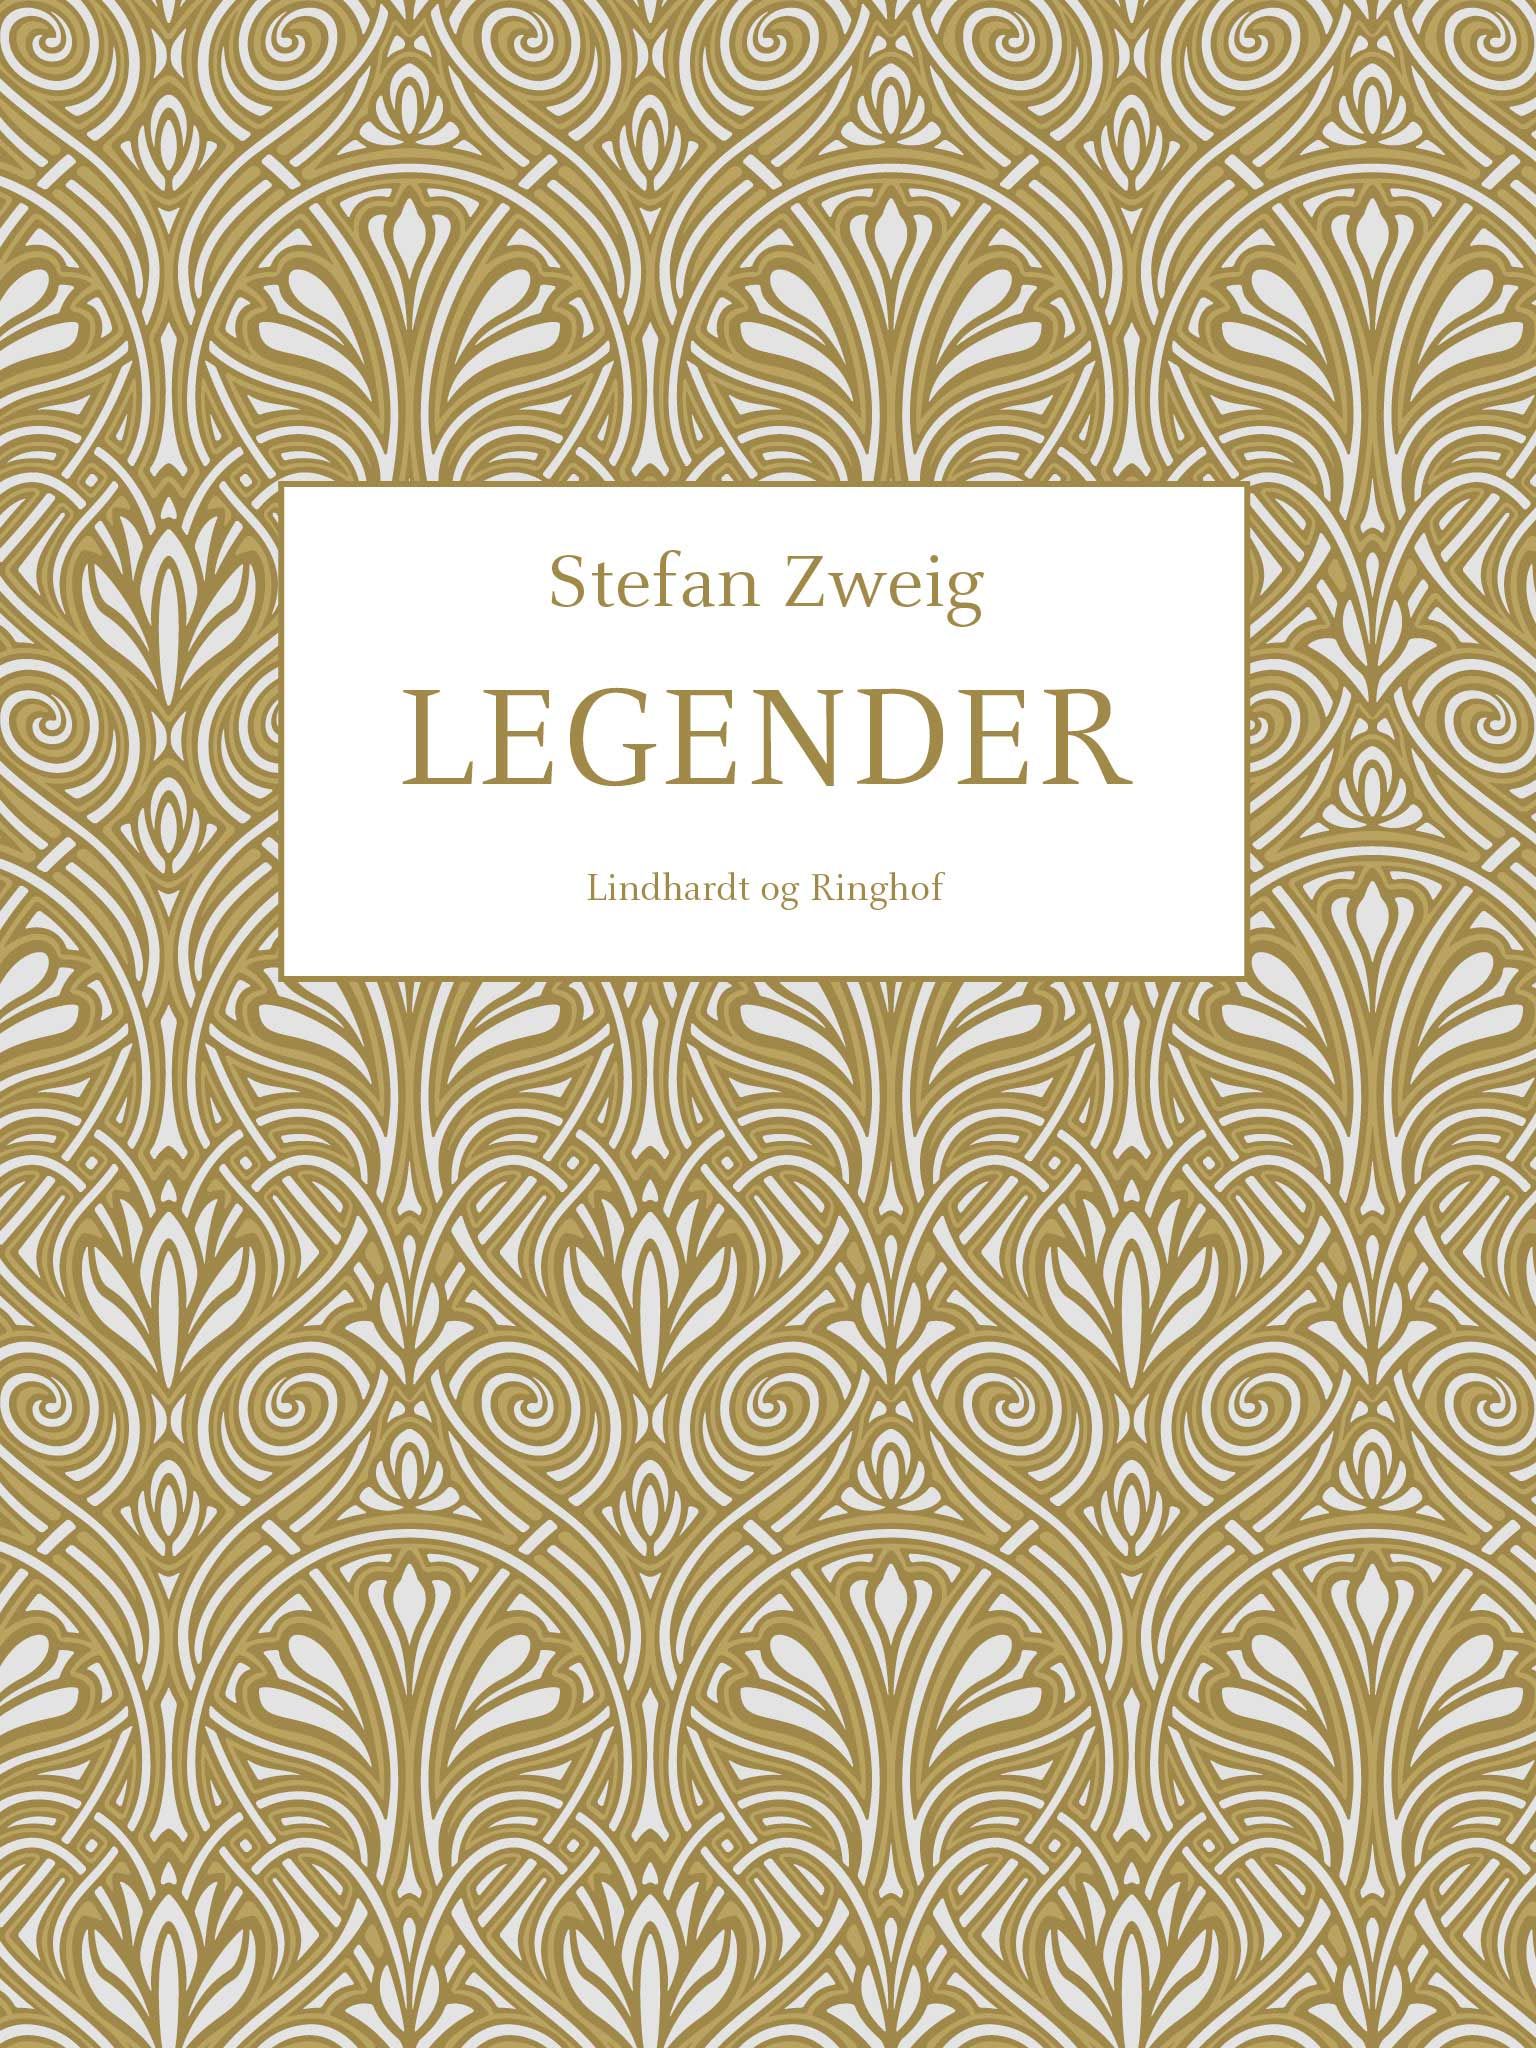 Legender, ljudbok av Stefan Zweig